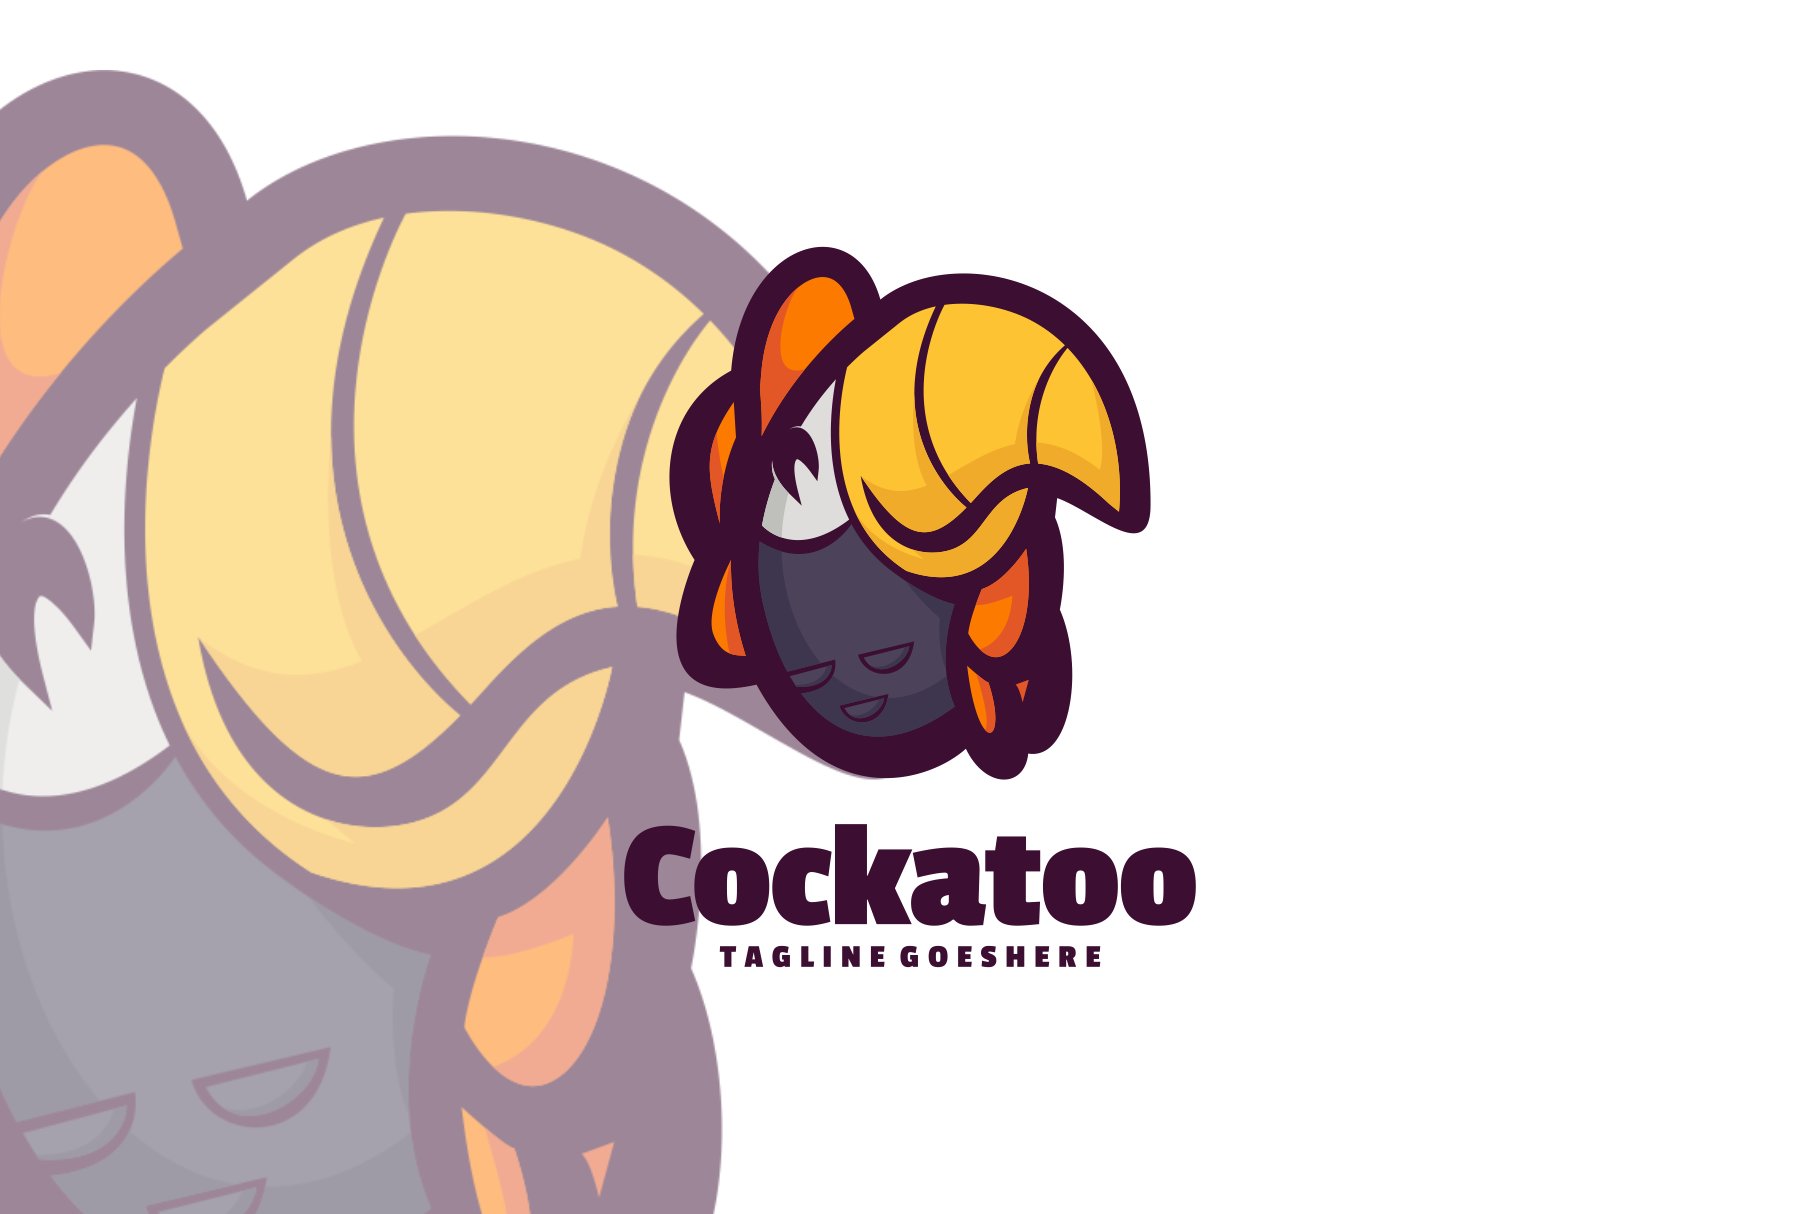 Cockatoo Logo cover image.